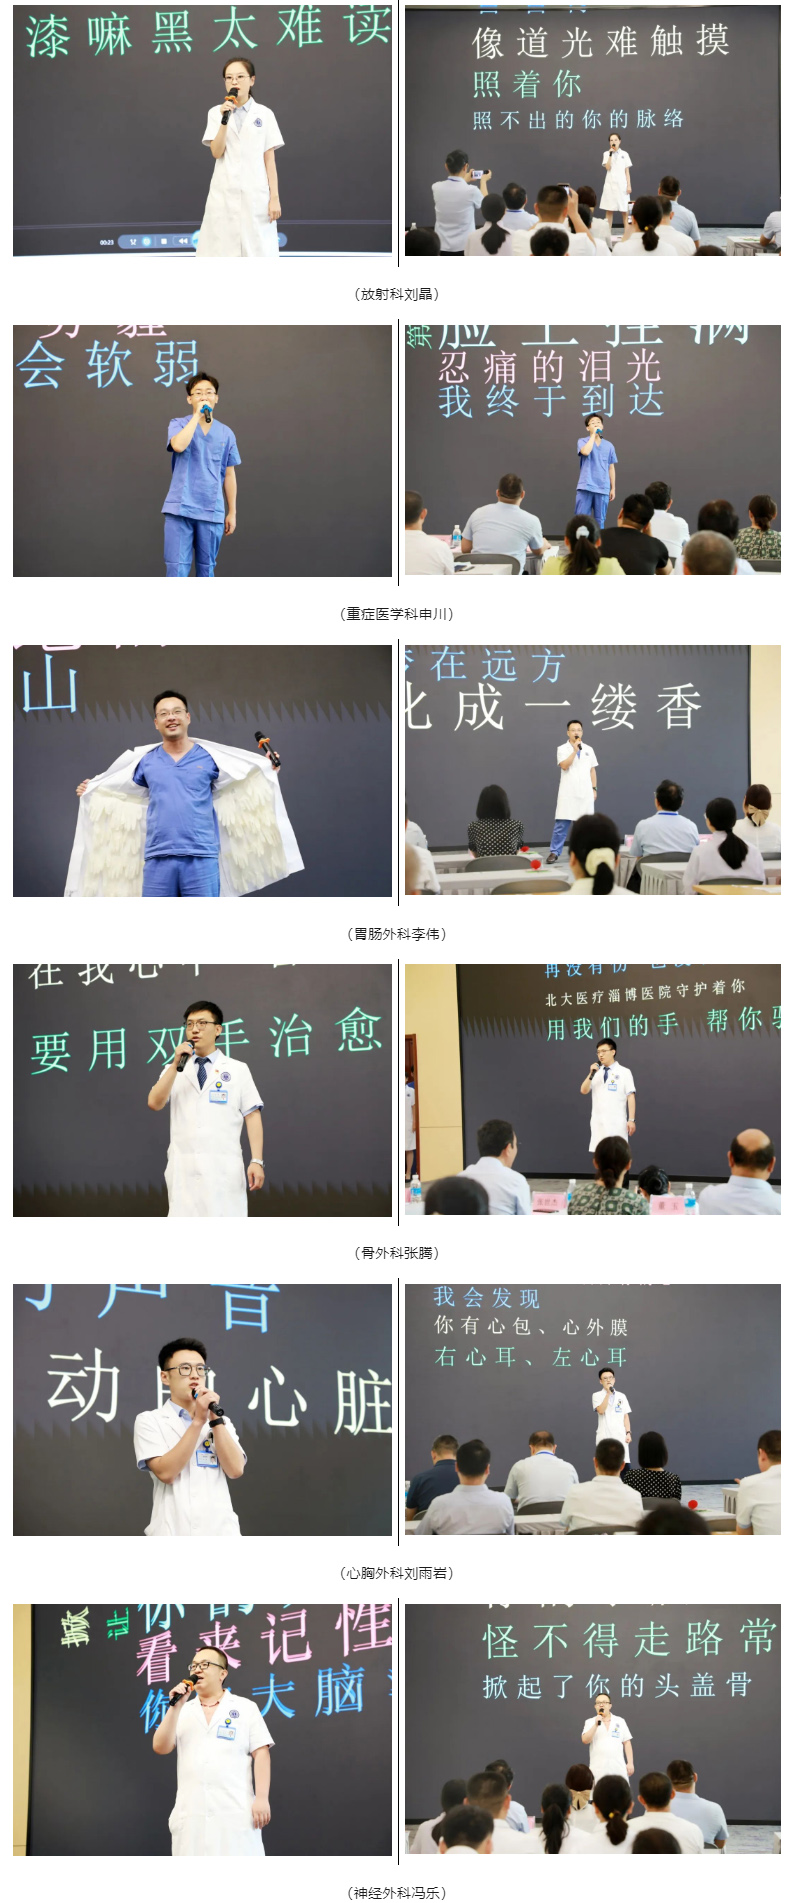 淄博经开区第六个“中国医师节”庆祝大会隆重举行.jpg